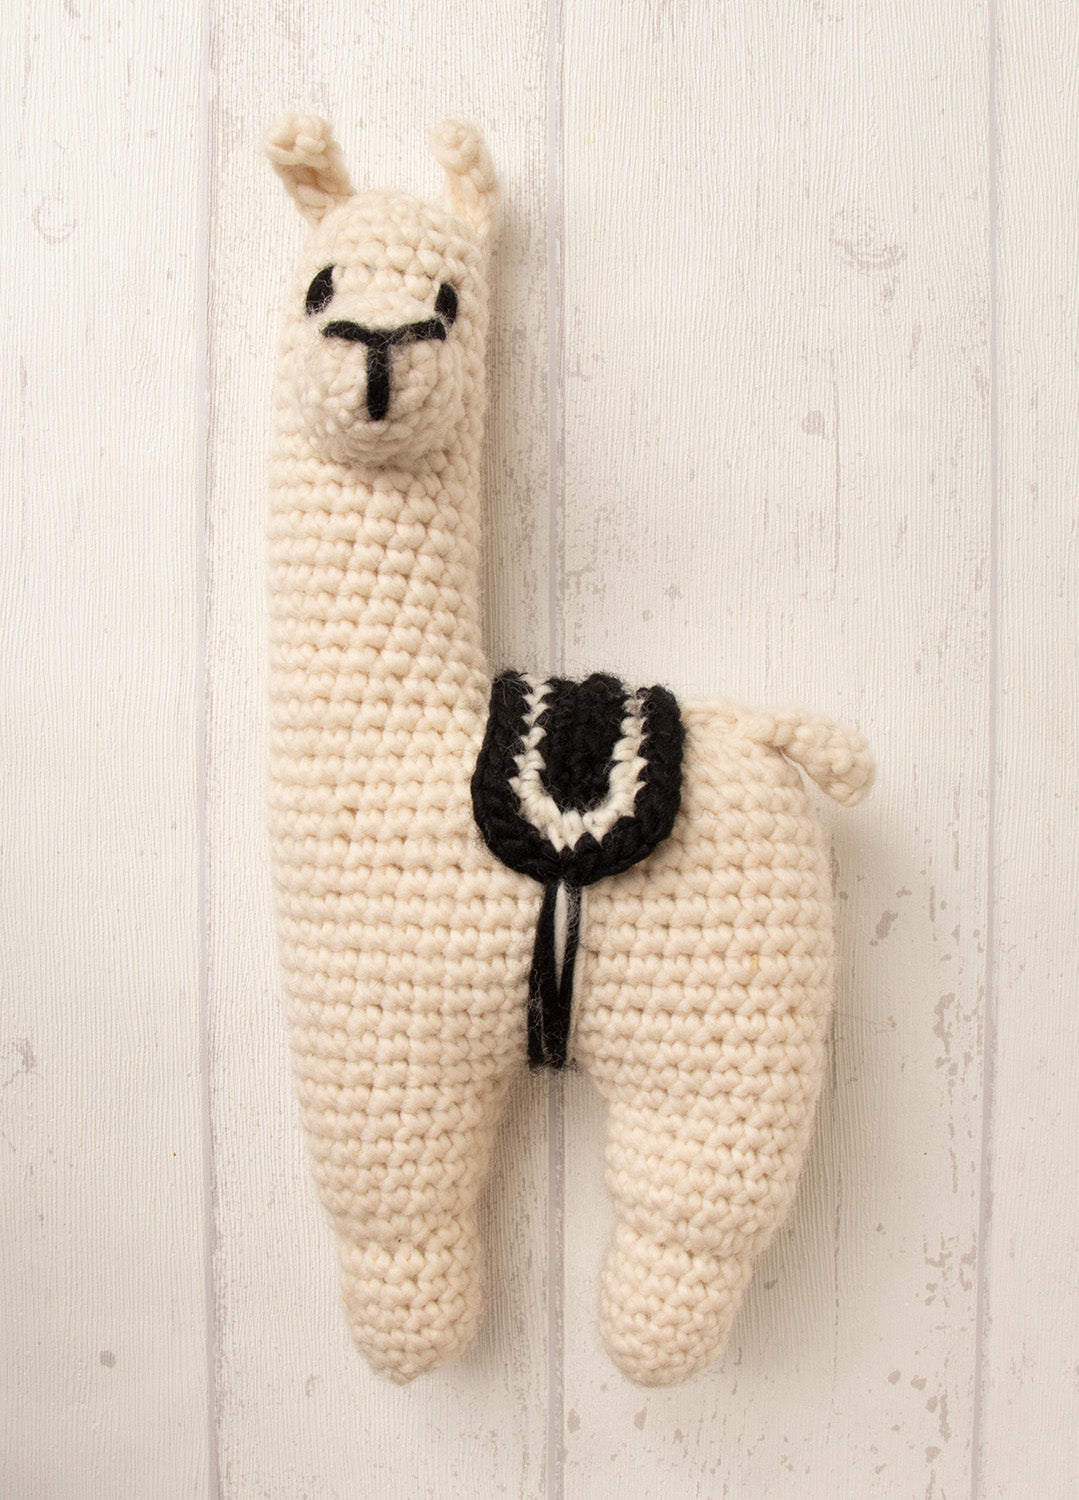 Crochet Llama Amigurumi Kit